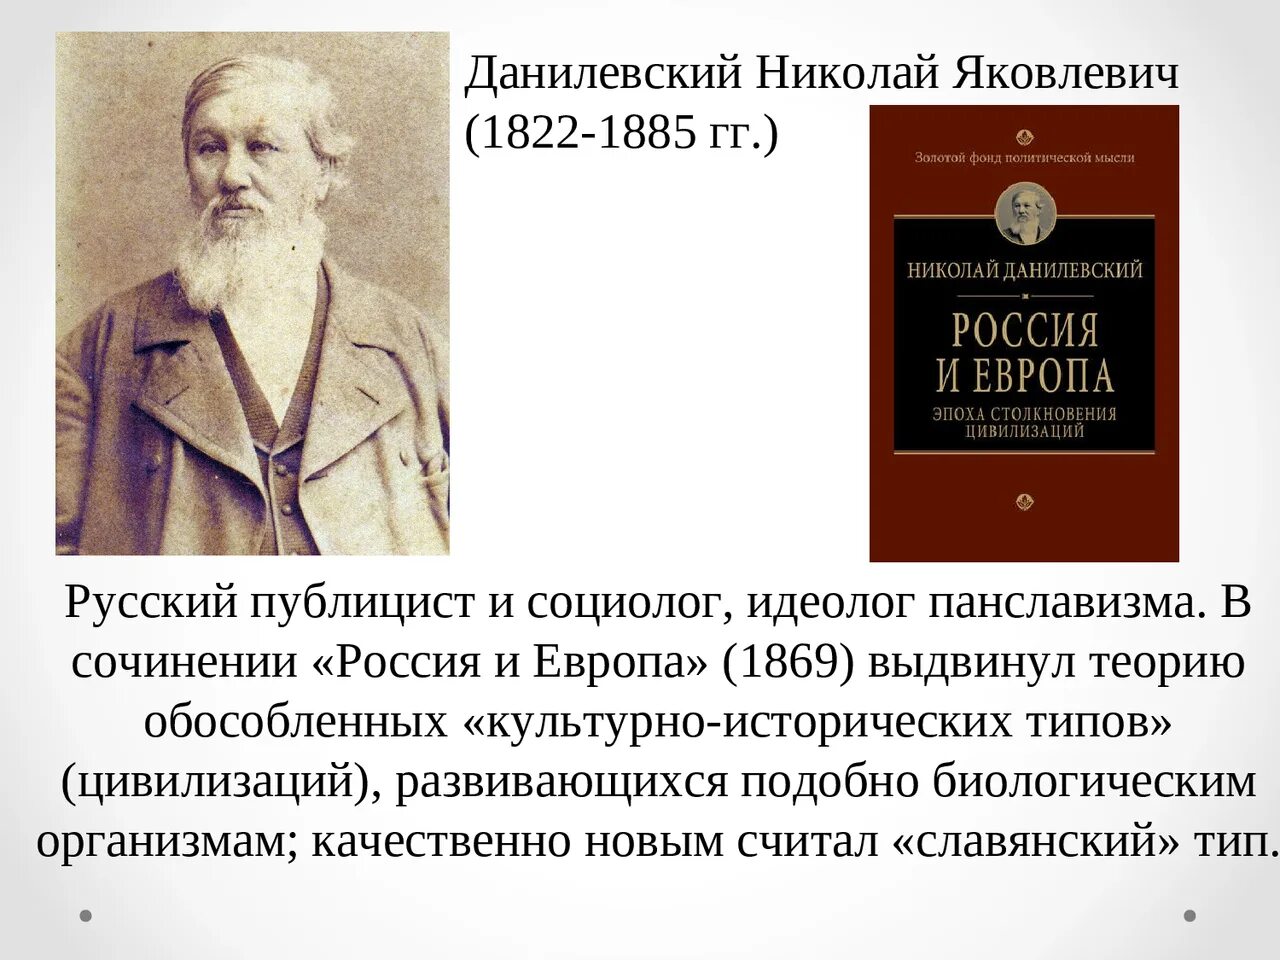 Данилевский россия и книга